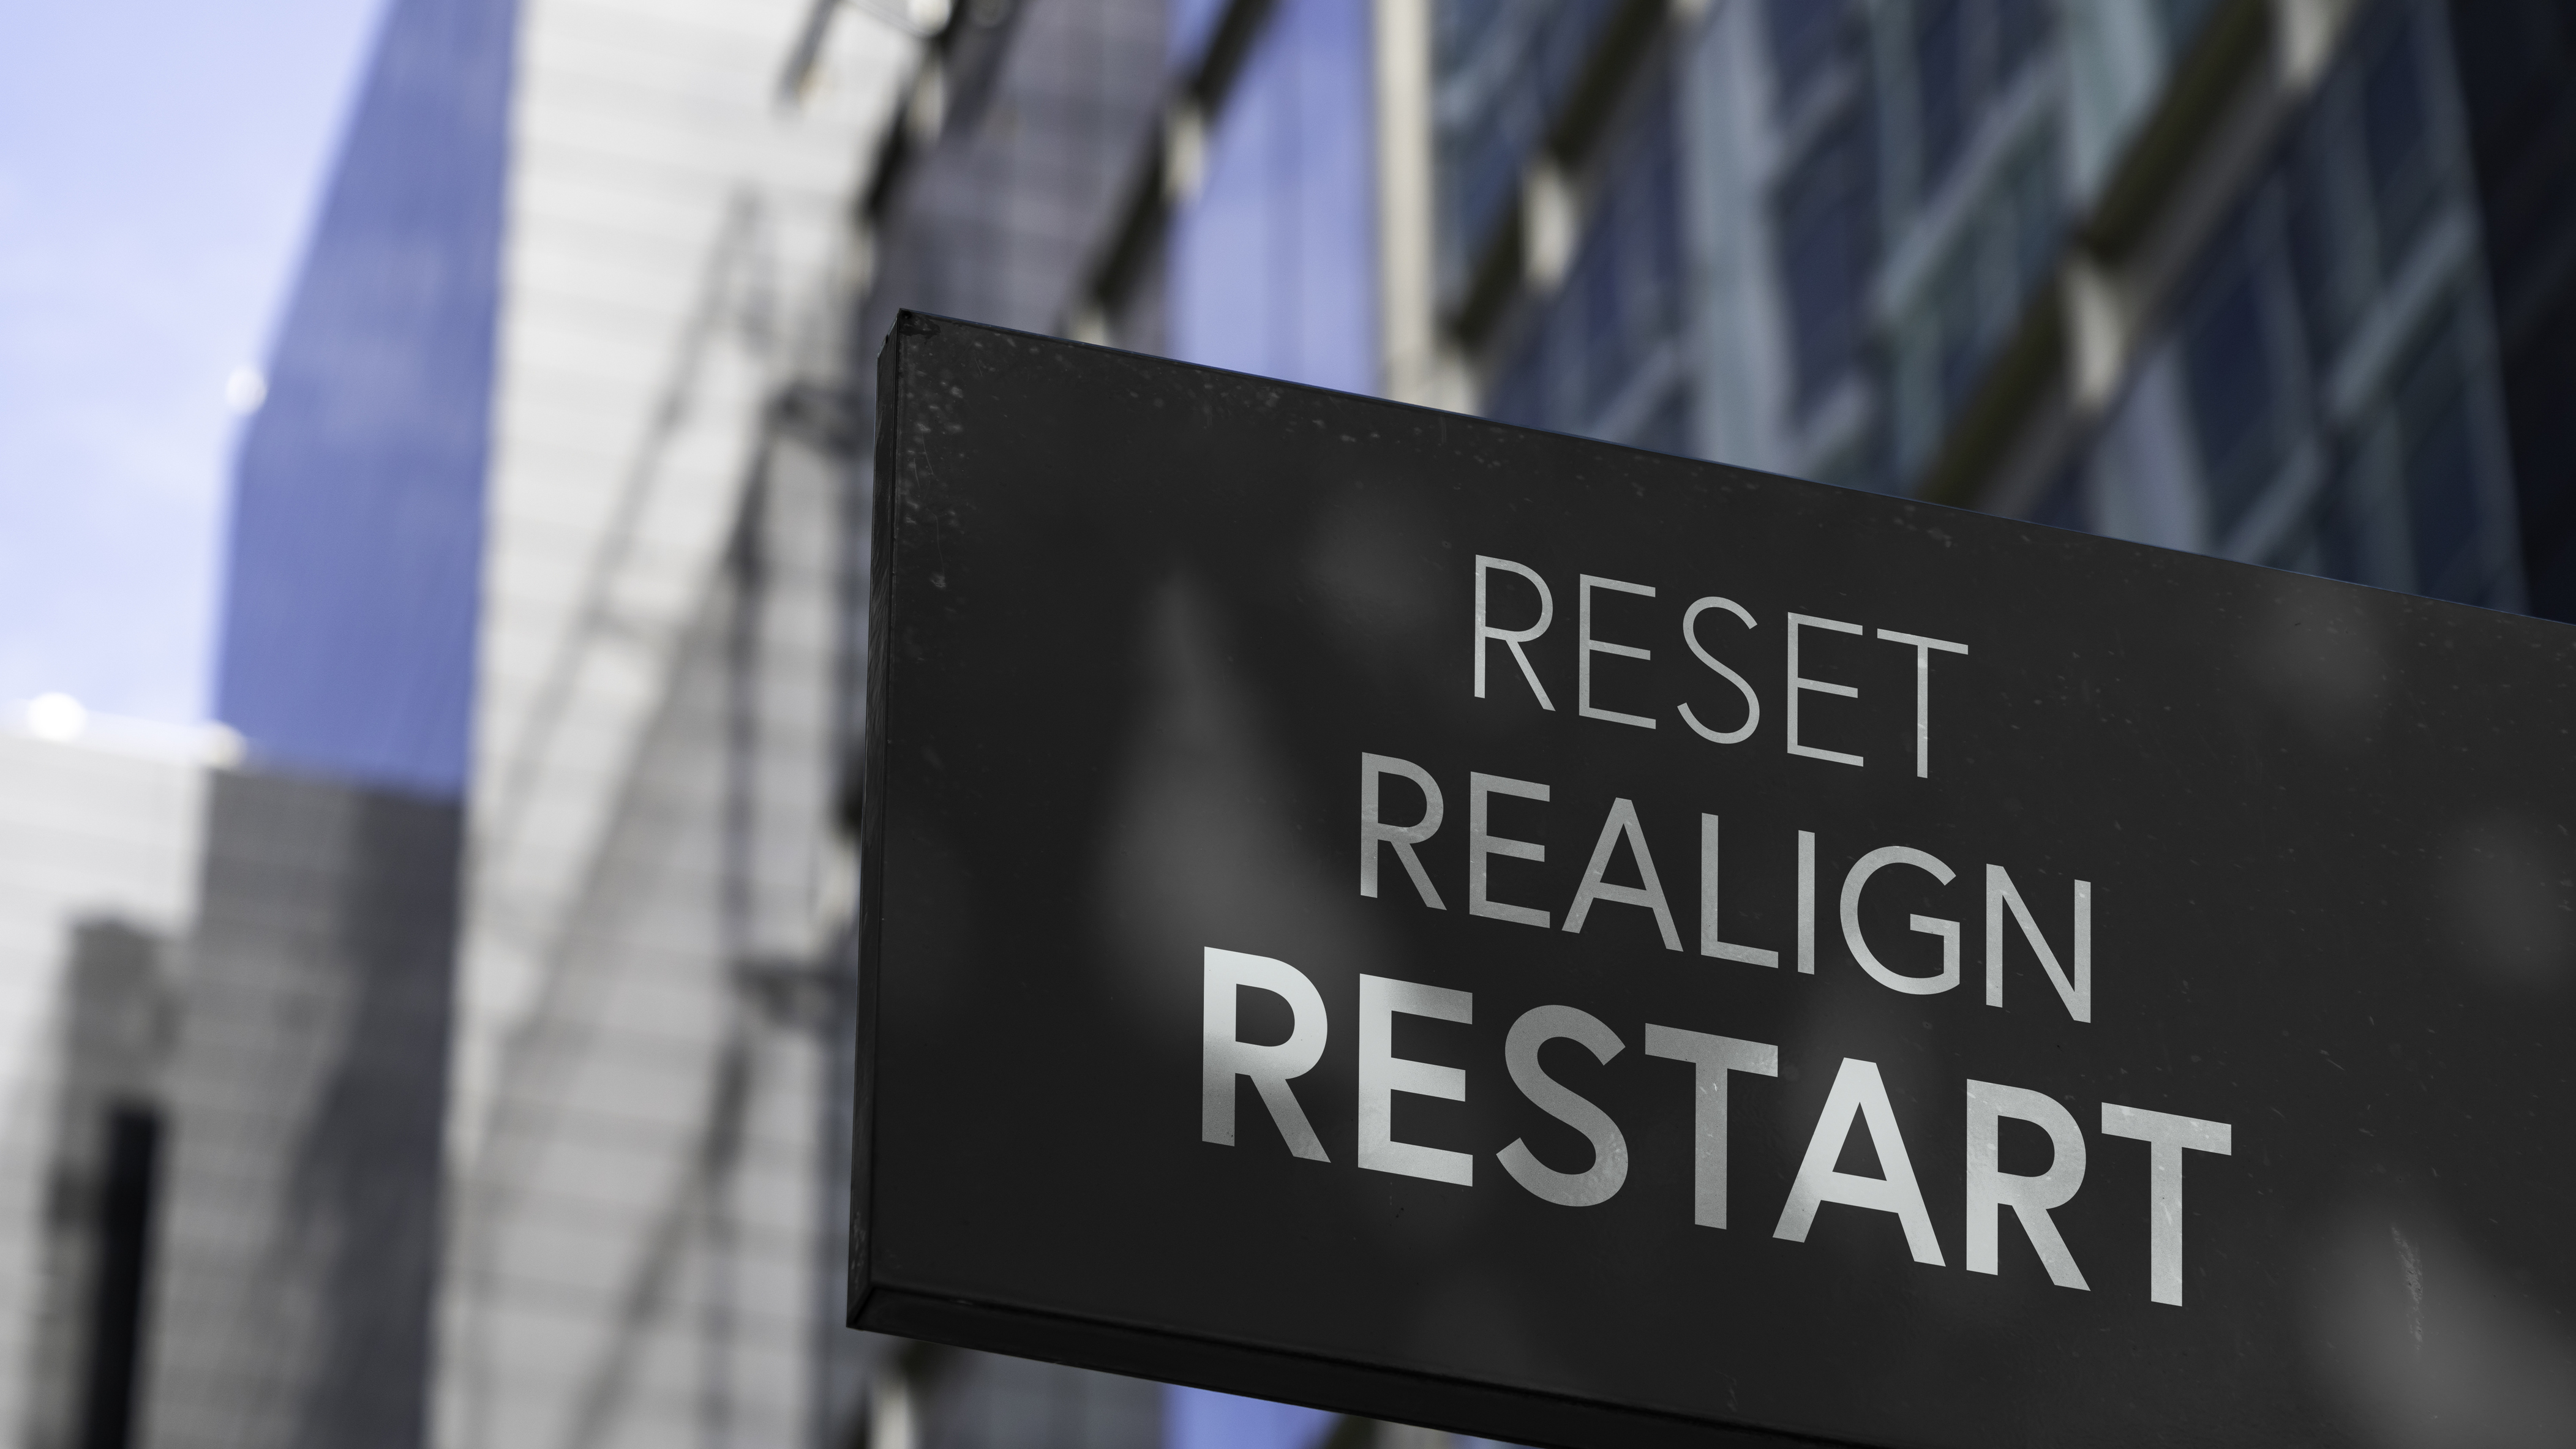 PHC0223_reset realign restart business.jpg